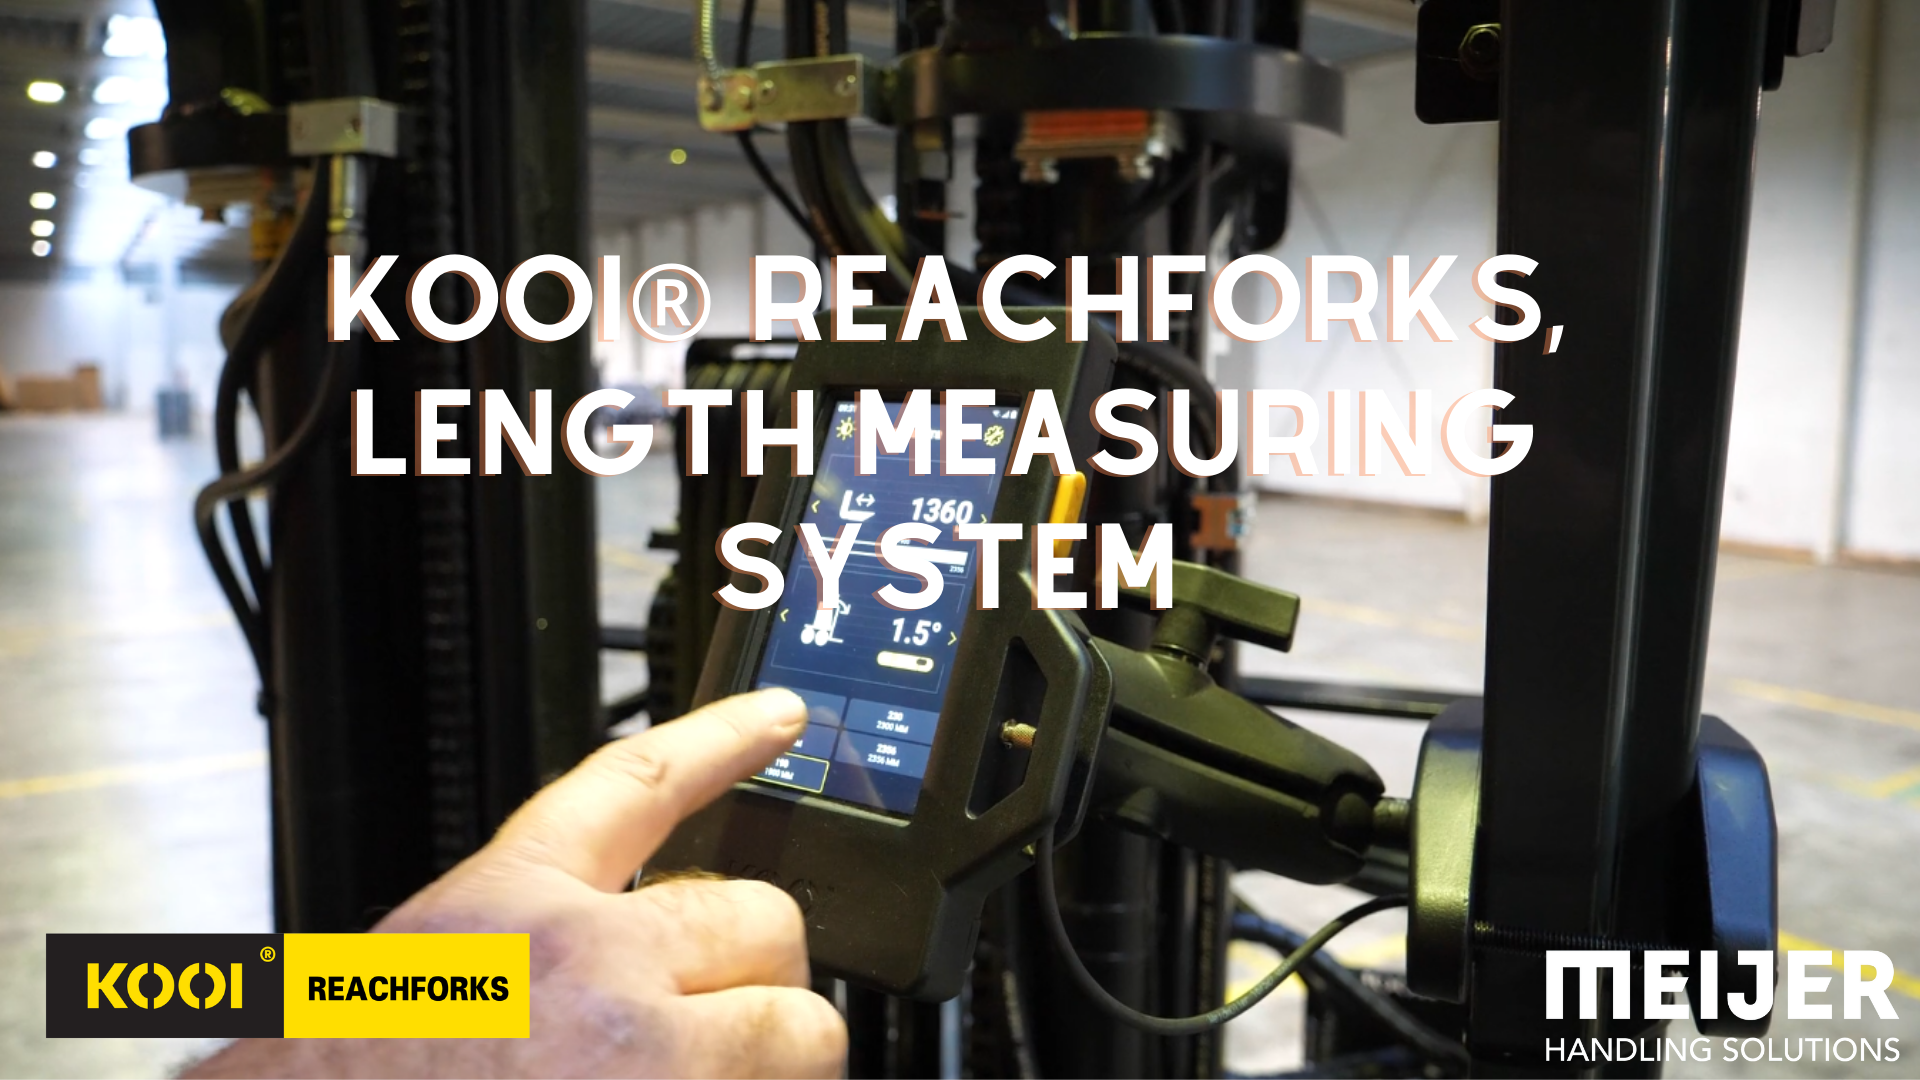 kooi-reachforks-pallet-length-measuring-system